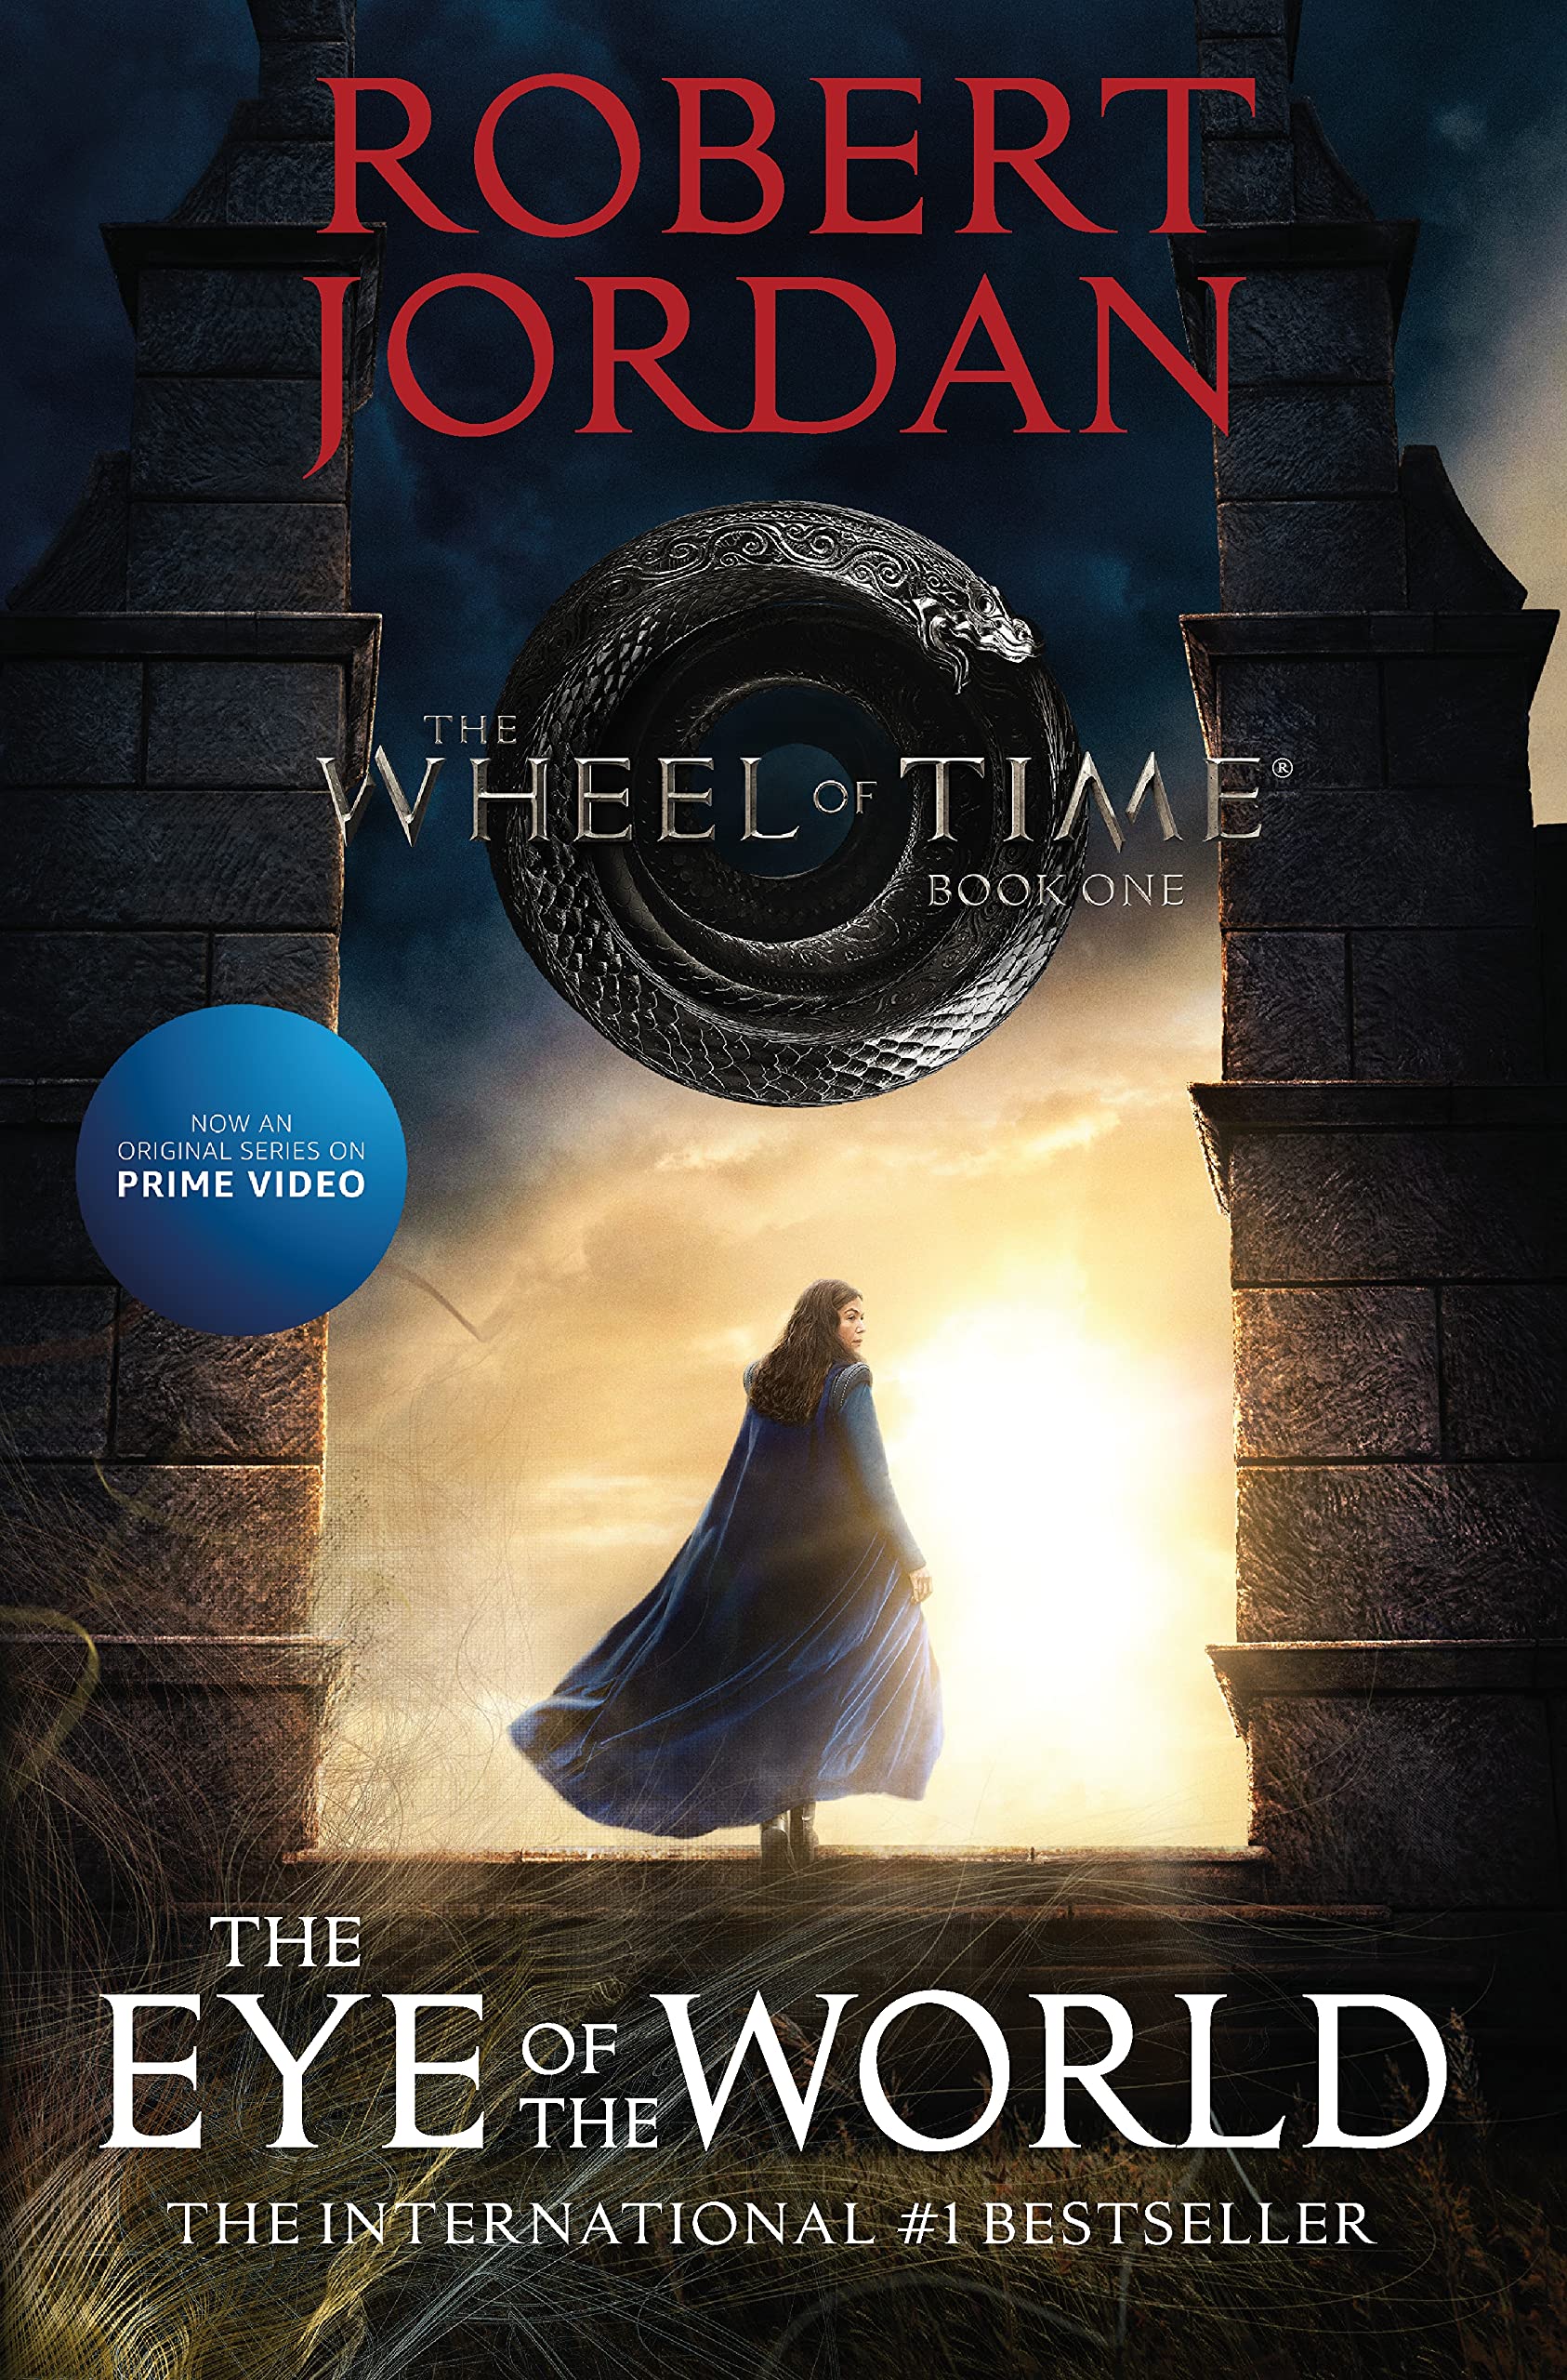 时光之轮 世界之眼 美剧原著 奇幻小说 裴淳华 英文原版 The Eye Of The World: Book 1 of the Wheel of Time